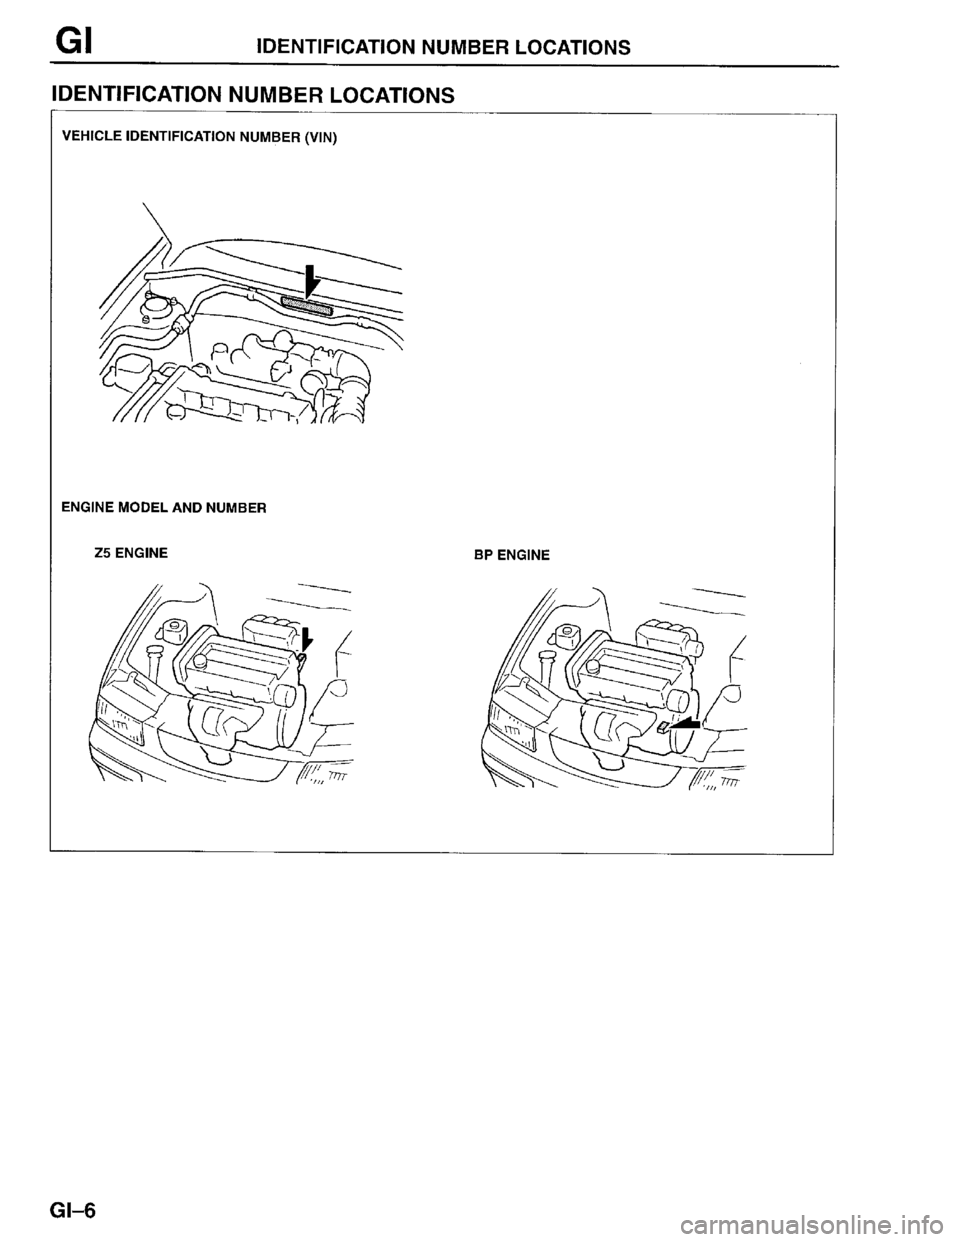 MAZDA PROTEGE 1996  Workshop Manual 